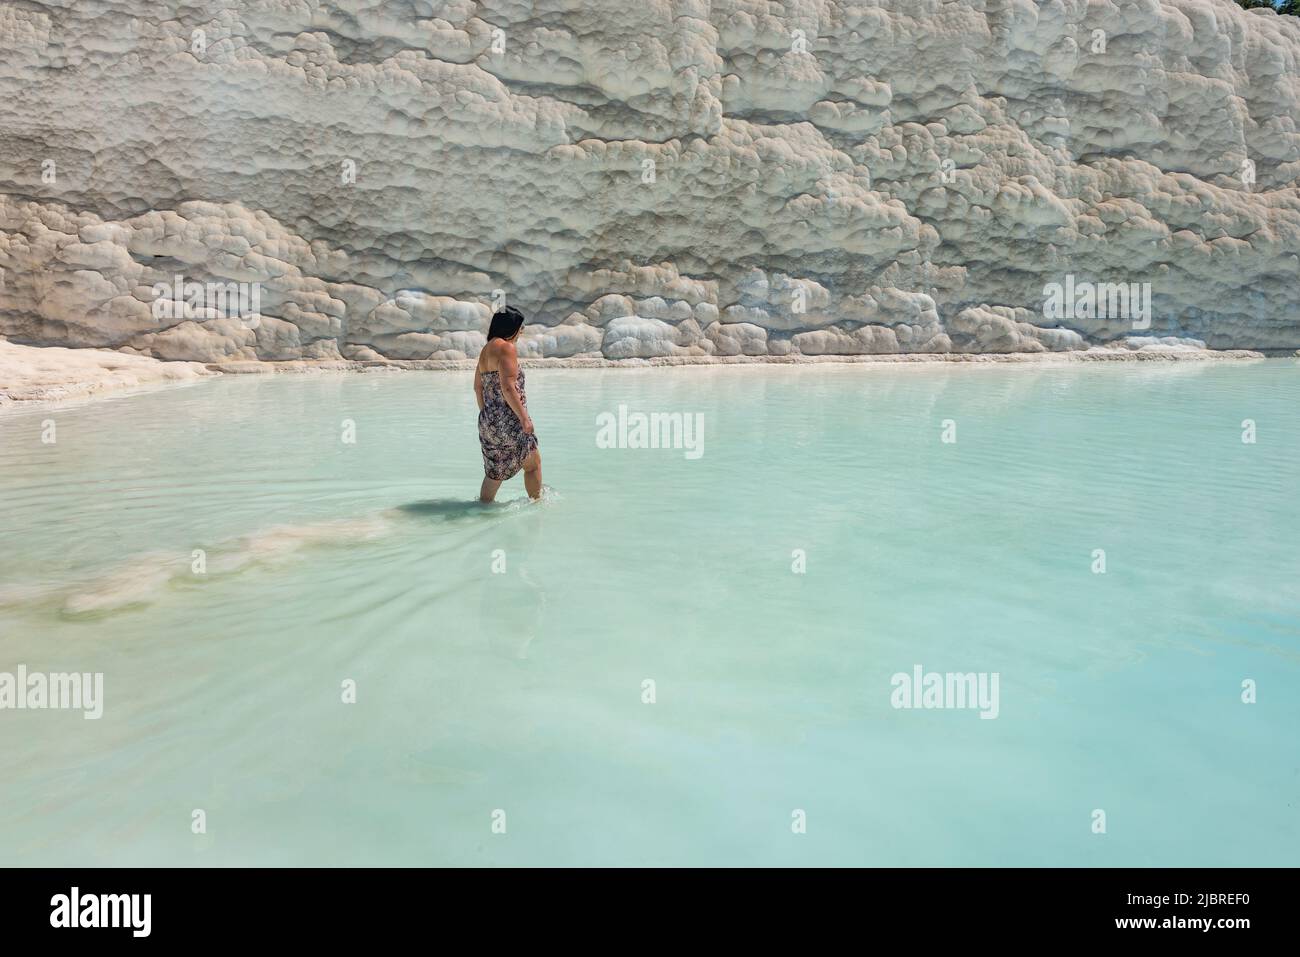 Pamakkule, Turquía, abril de 25th 2020 Un turista empapa sus pies en las aguas termales de las terrazas travertinas de Pamukkale, el wat termal rico en minerales Foto de stock